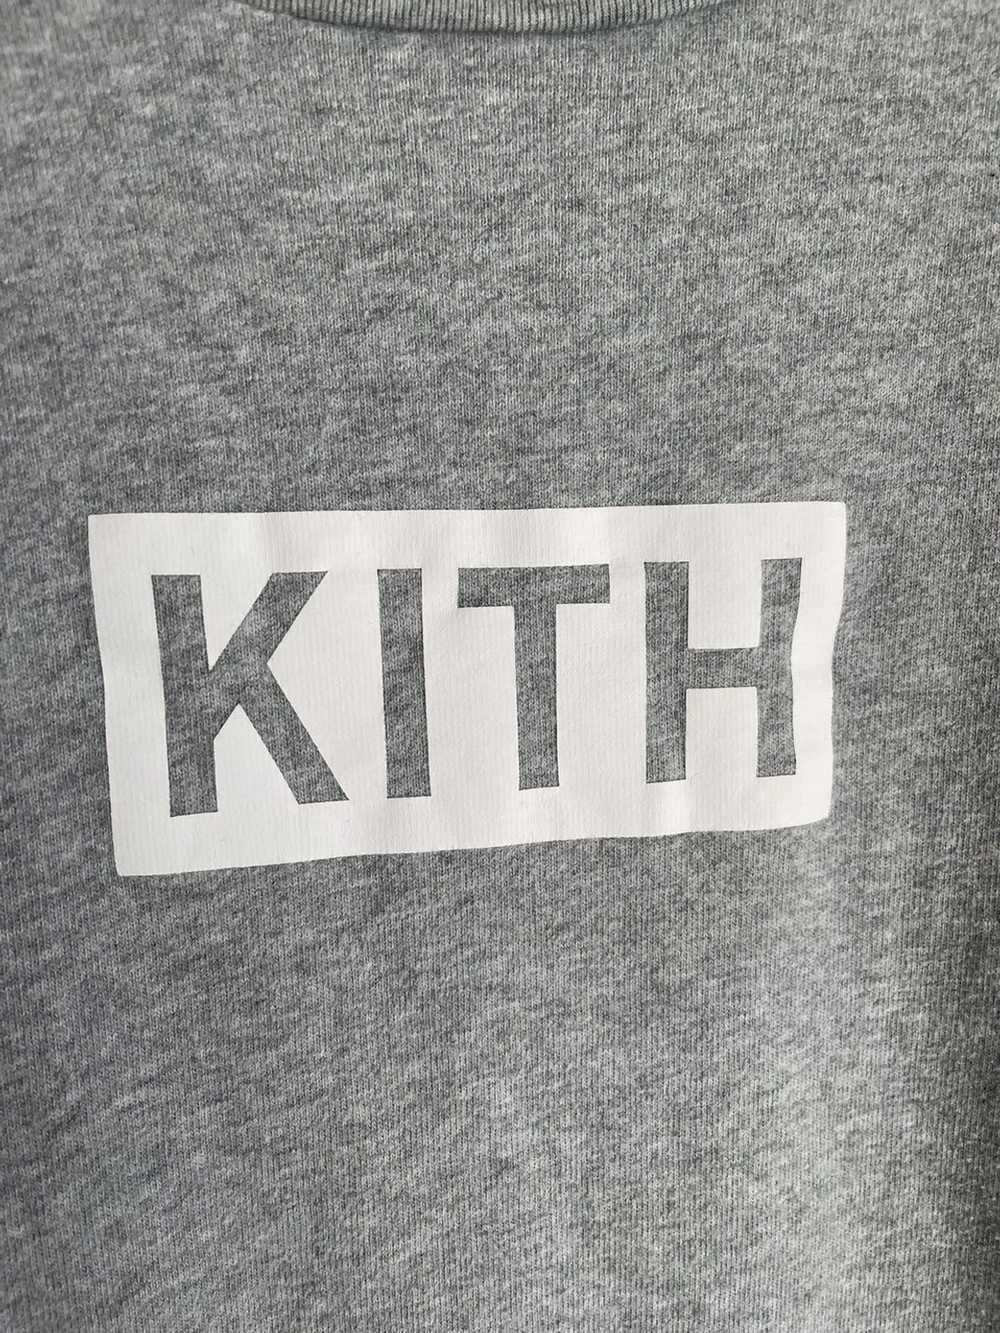 Kith Kith Box Logo Grey Size Large - image 6